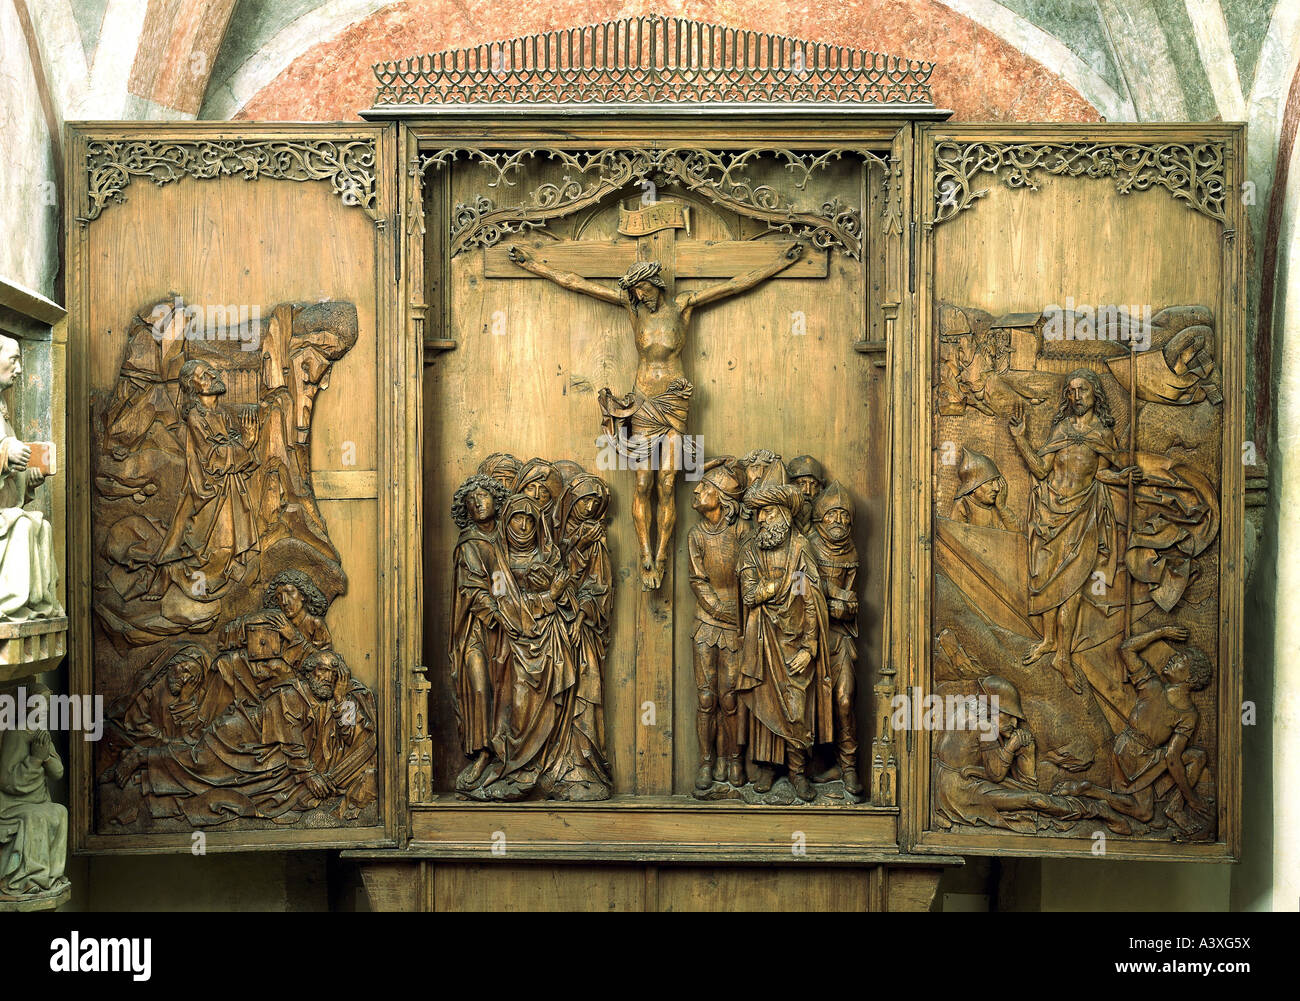 Bildende Kunst, Riemenschneider, Tilman (um 1460 - 7.7.1531), Altar der Kreuzigung, St. Peter und Paul Kirche, Detwang, mittlere Fran Stockfoto